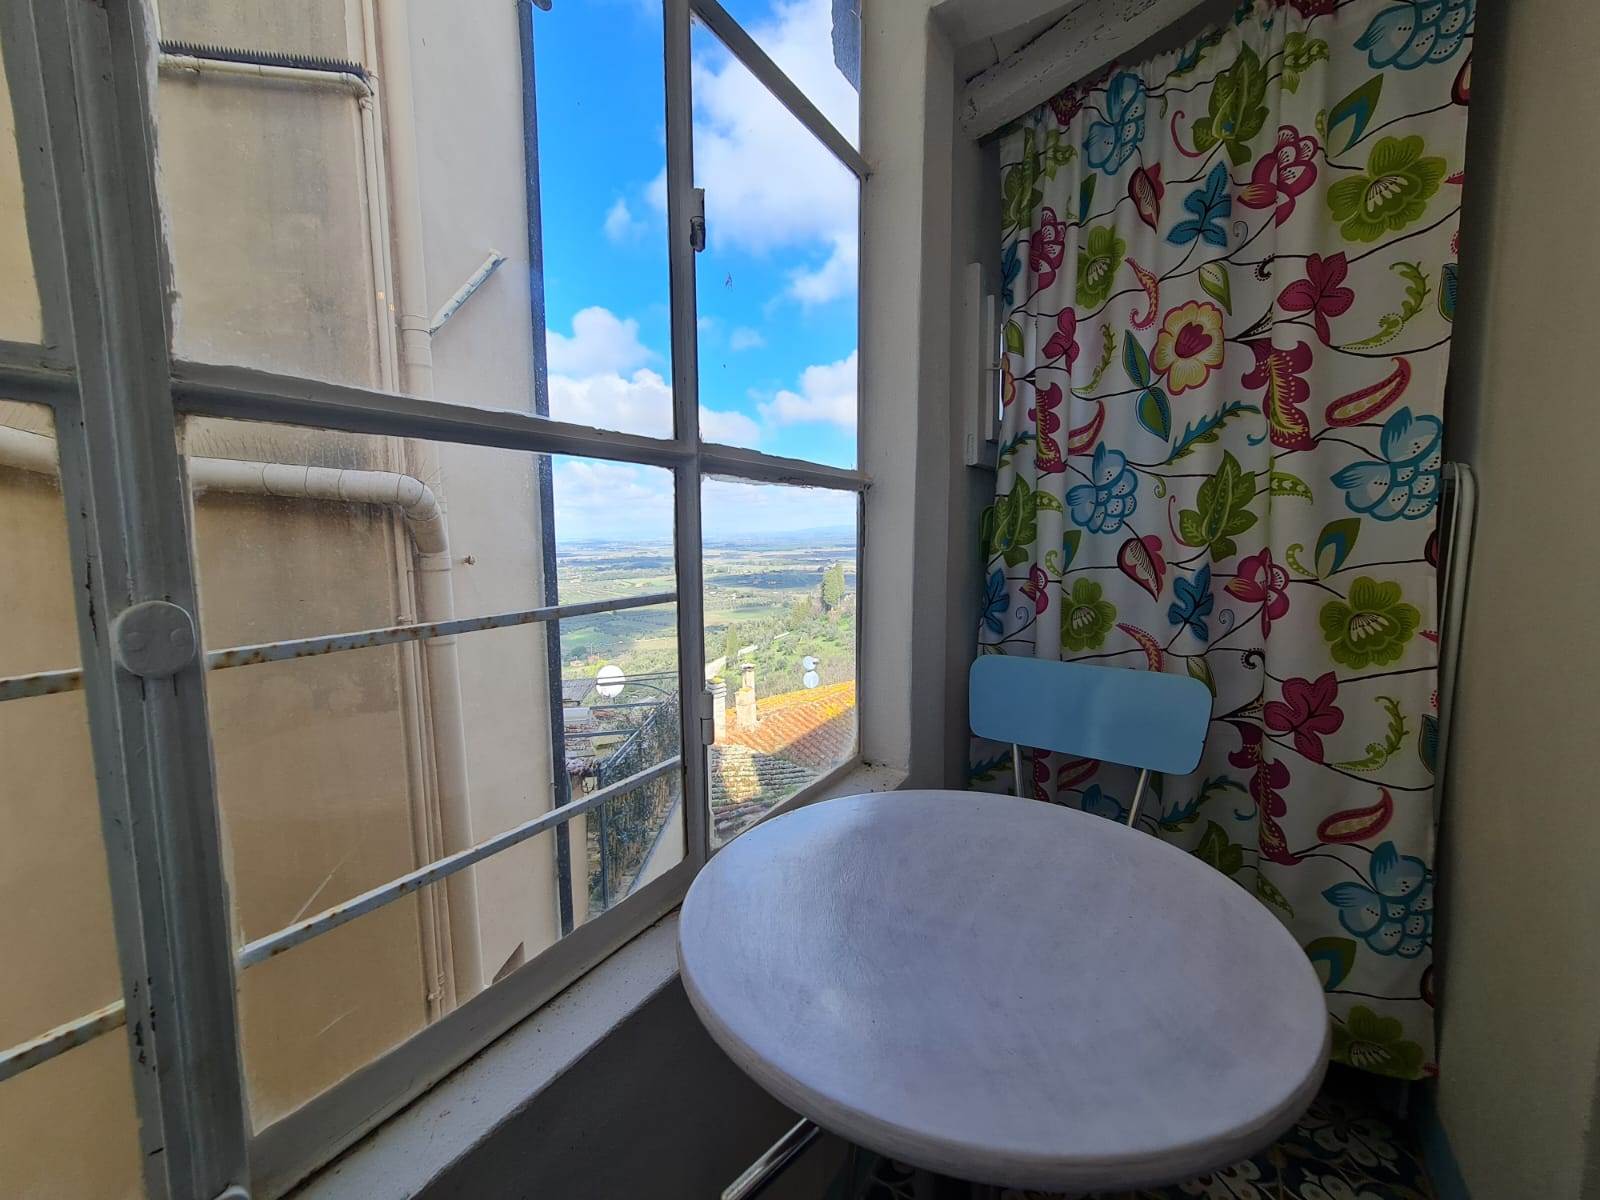 Splendido appartamento al piano primo in vendita a Castagneto Carducci, nel cuore dell'alta maremma, con una caratteristica vista nascosta. 